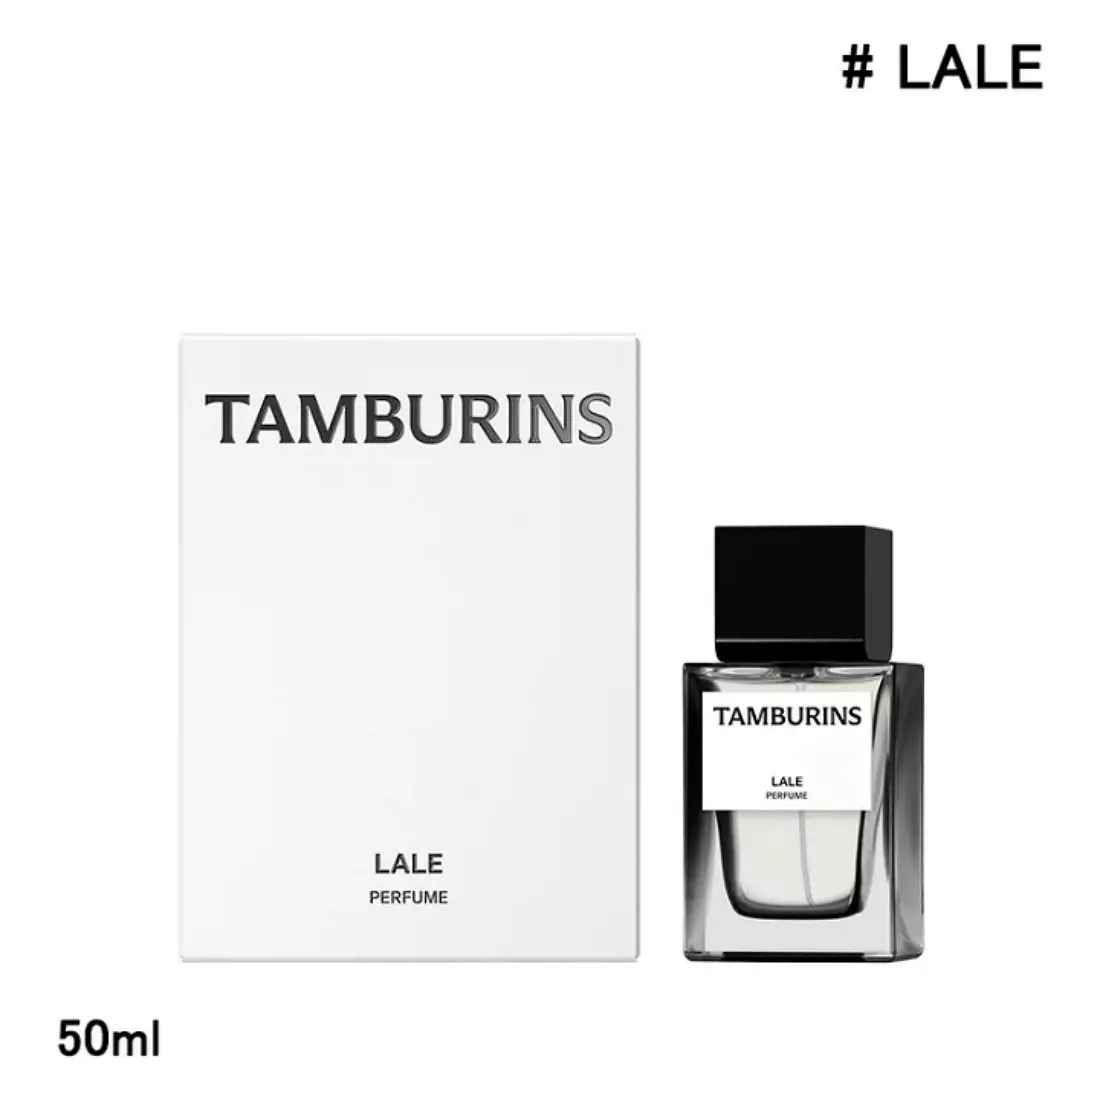 TAMBURINS Perfume - #Lale 50ml